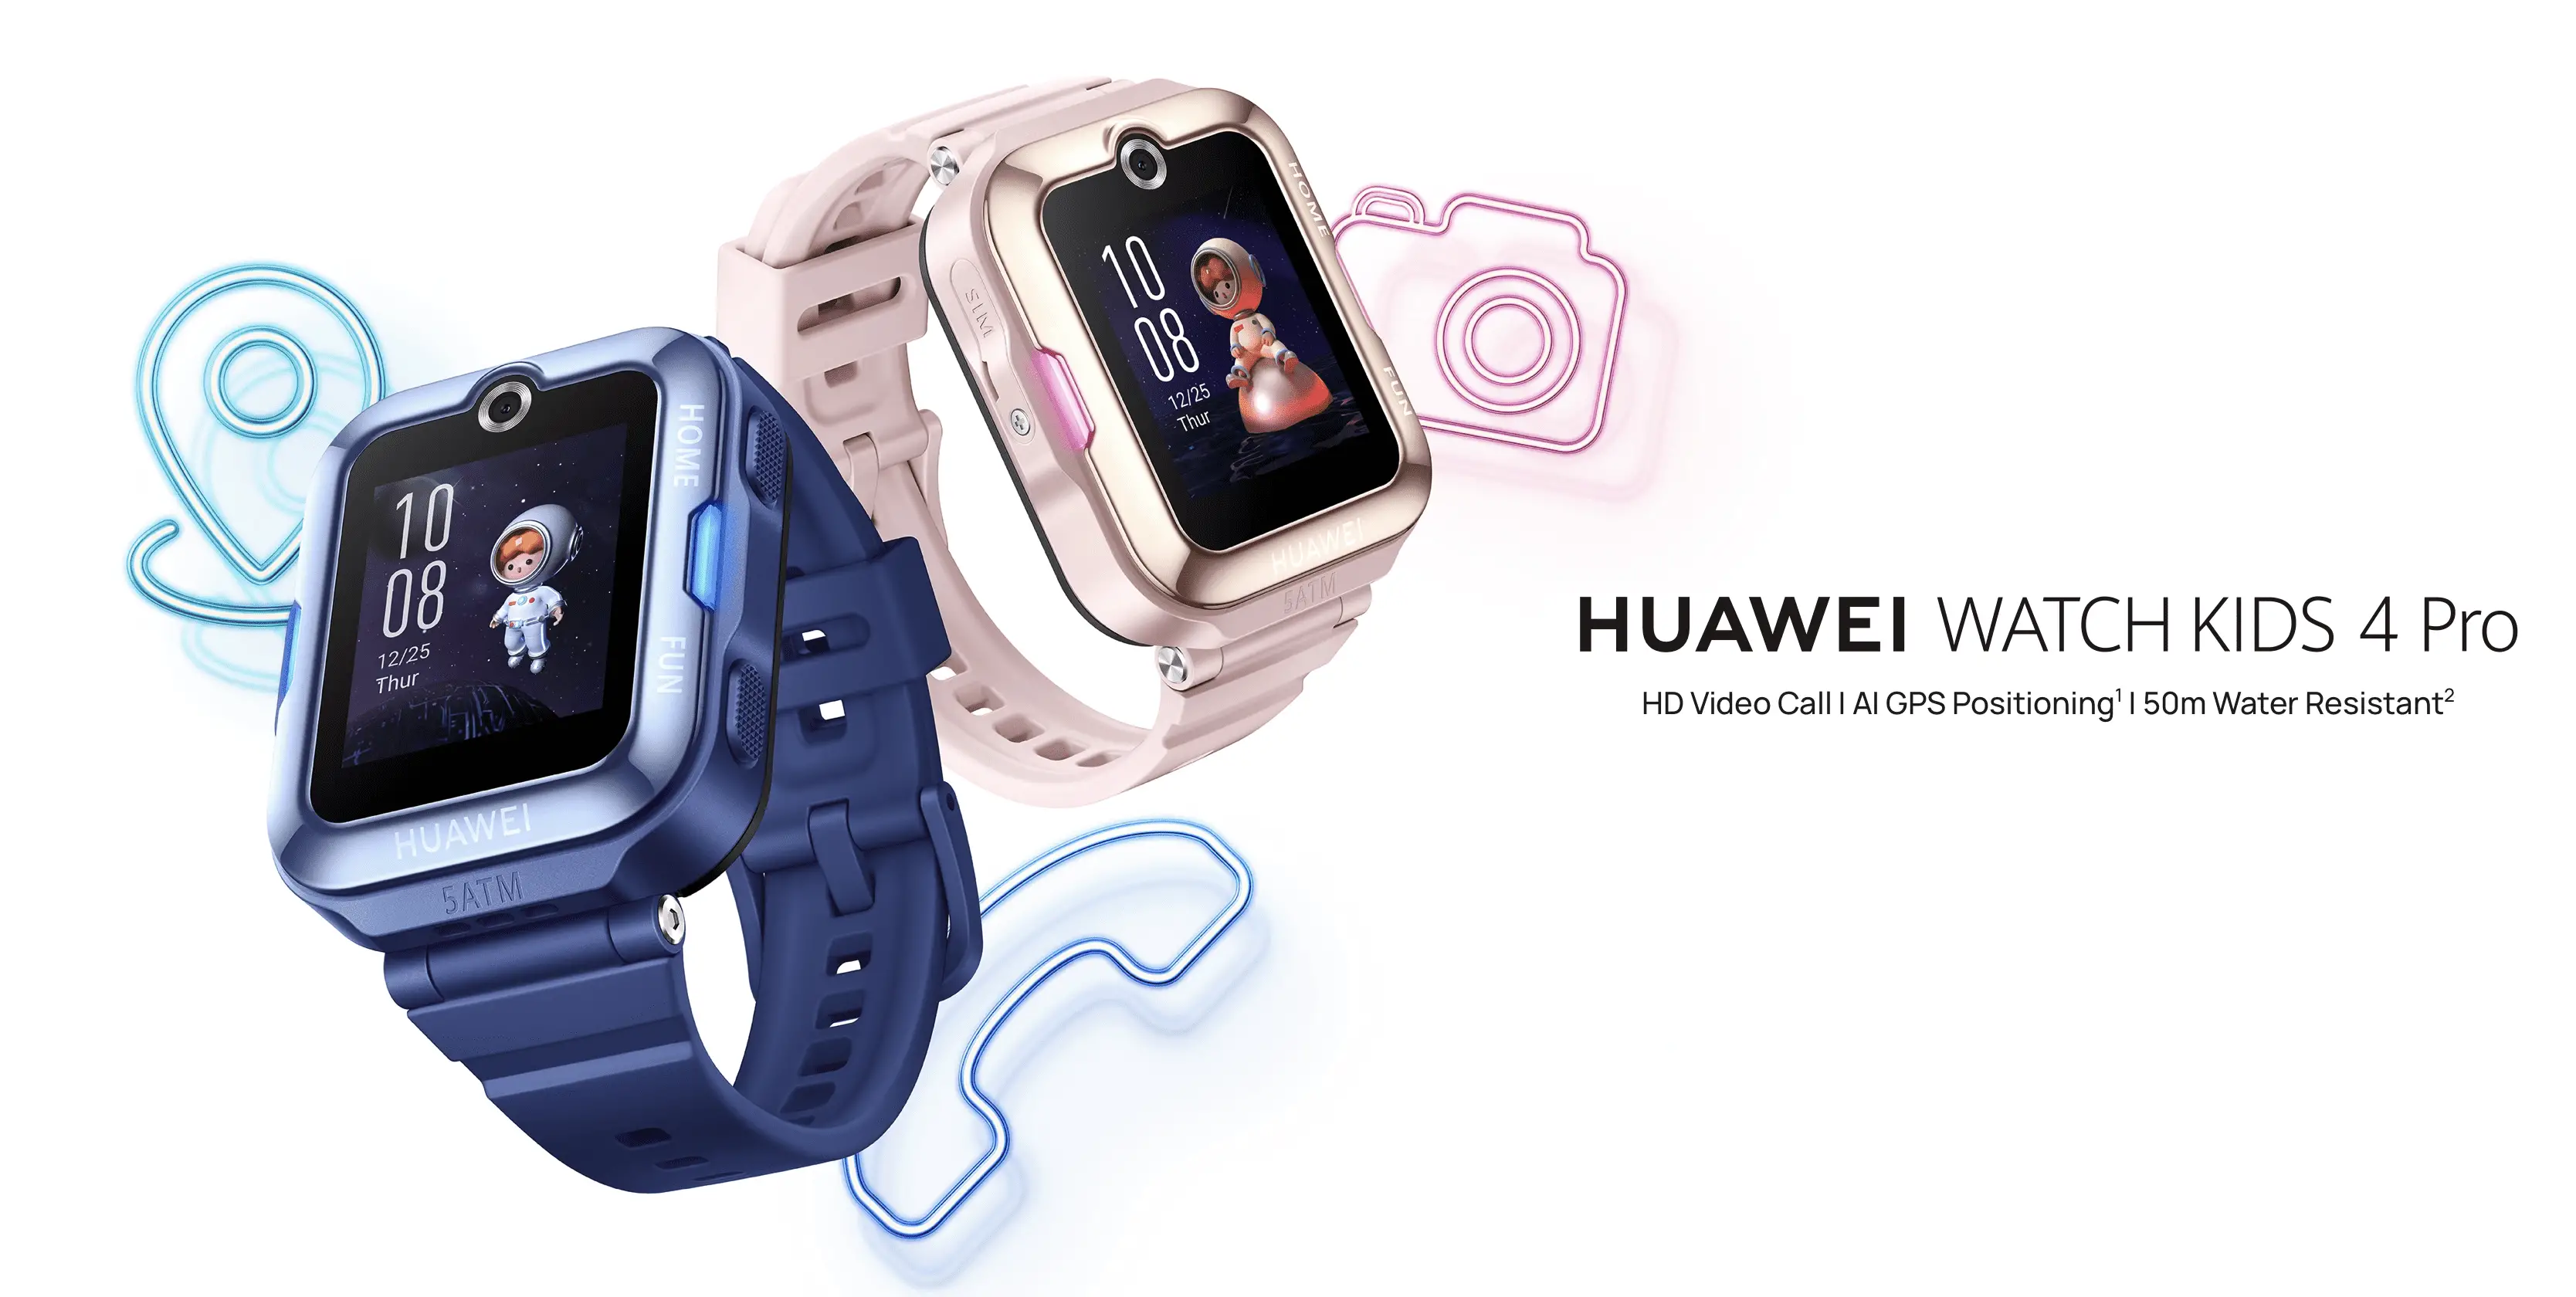 Huawei lanza en Costa Rica su reloj inteligente para niños con GPS y  videollamadas en HD - Tec Toc Blog